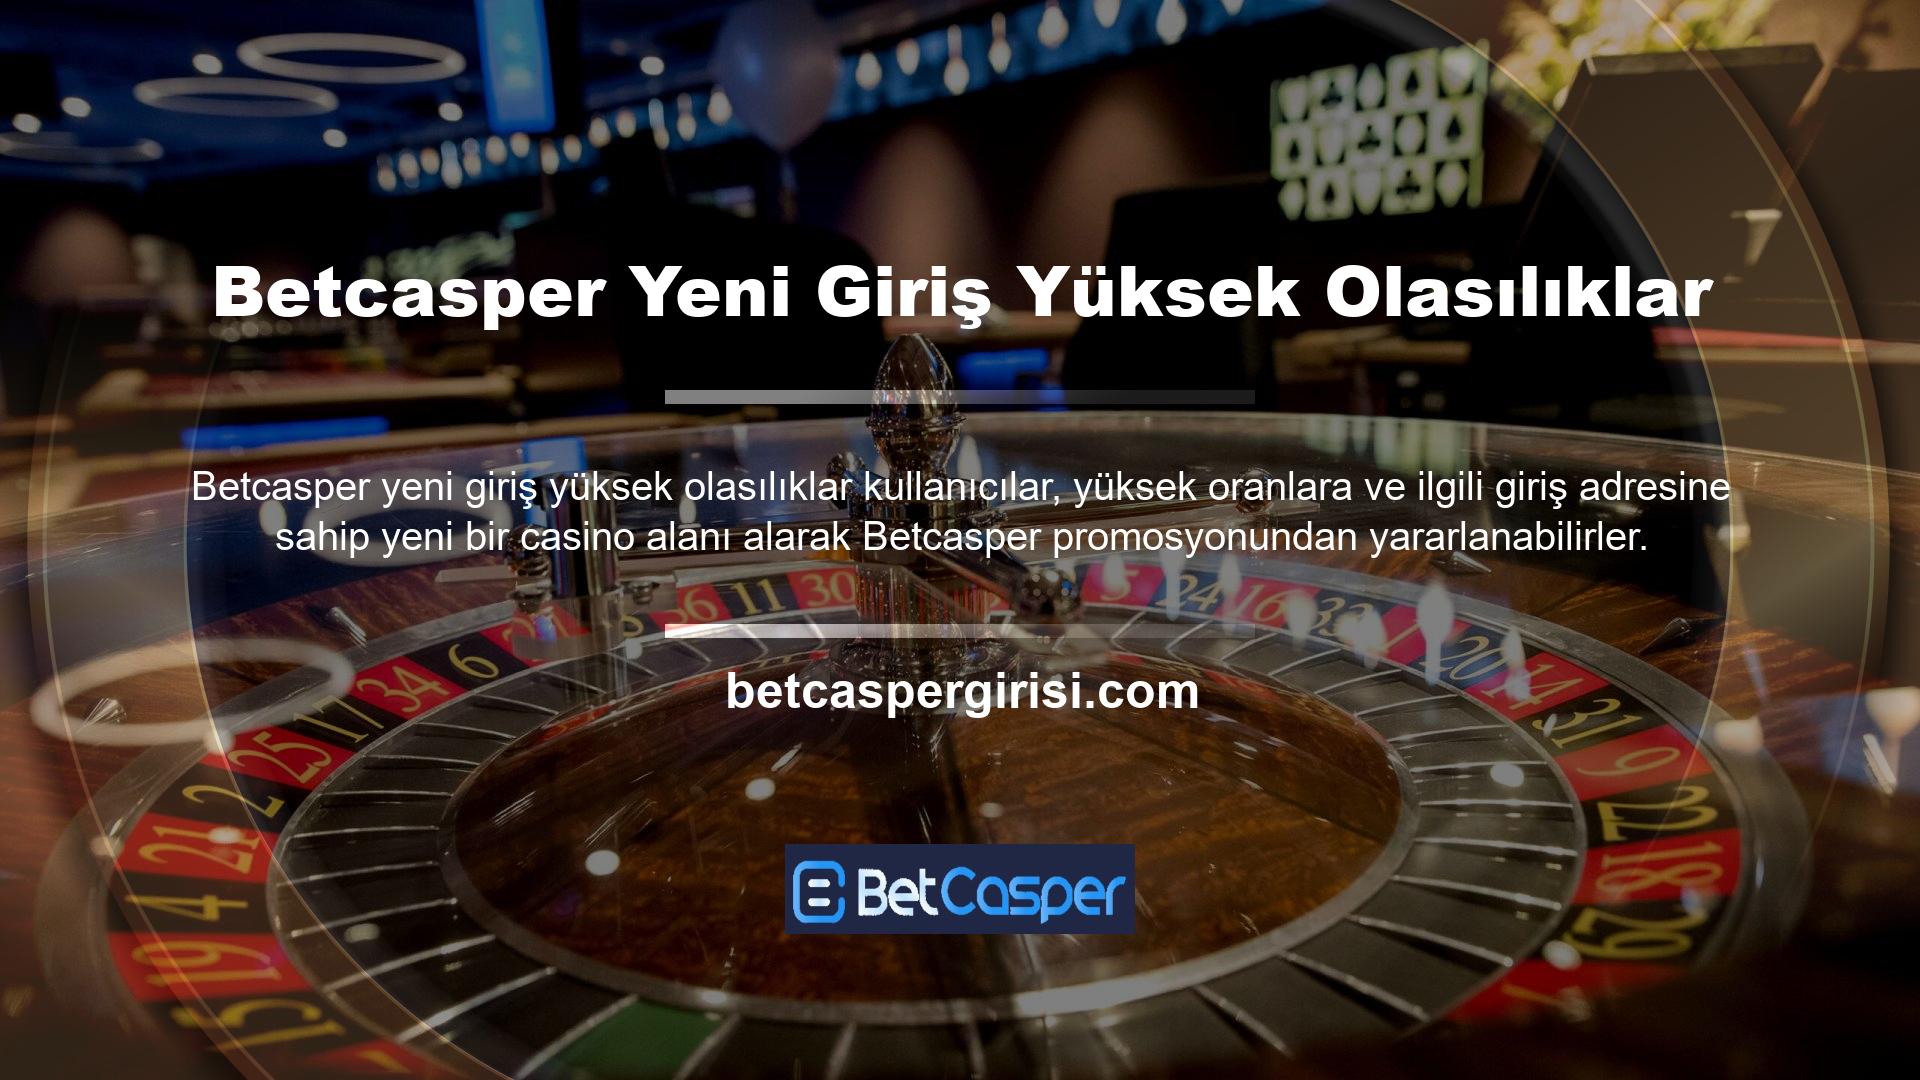 Sitenin 'Casino' ve 'Canlı Casino' bölümlerinin yanı sıra ziyaretçiler, oyun bölümünde video poker, slot ve masa oyunlarına da erişebilmektedir